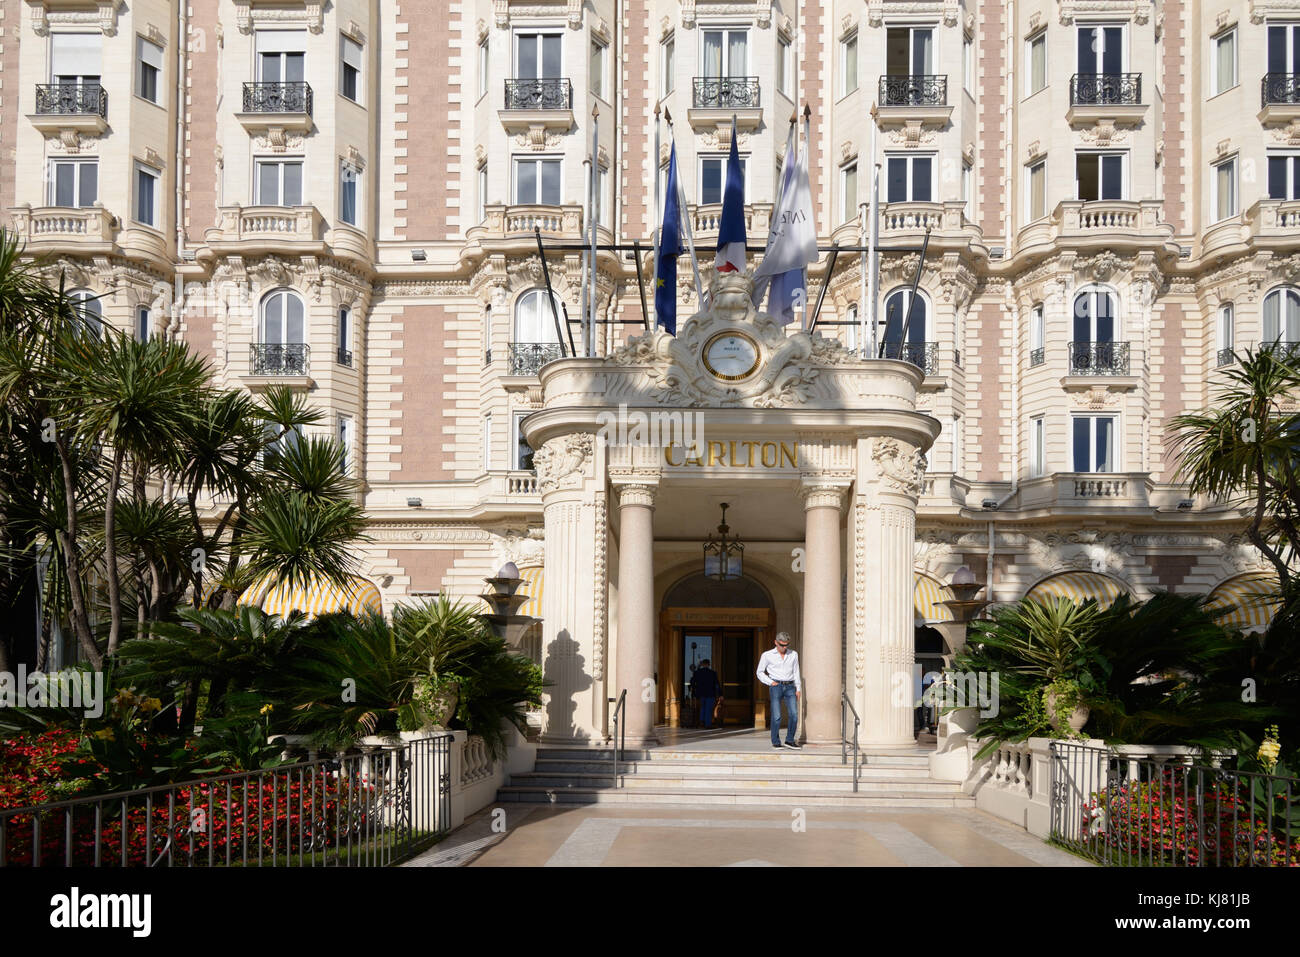 Entrée au luxueux hôtel InterContinental Carlton, construit en 1911, sur le boulevard de la Croisette, Cannes, Alpes-Maritimes, France Banque D'Images